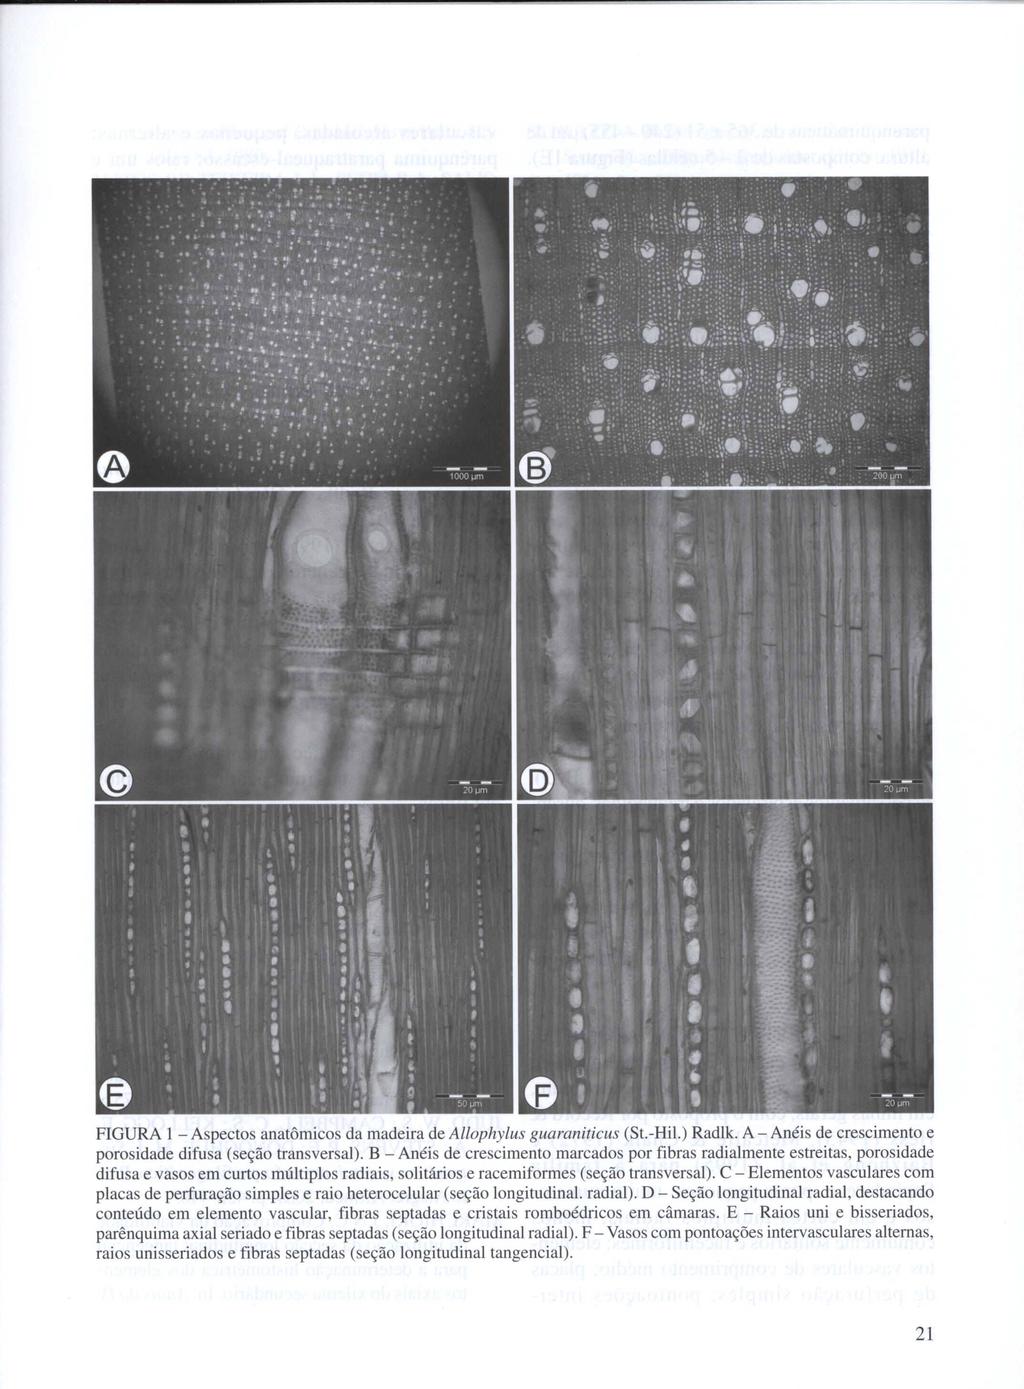 FIGURA 1 - Aspectos anatômicos da madeira de Allophylus guaraniticus (St.-Hil.) Radlk. A - Anéis de crescimento e porosidade difusa (seção transversal).